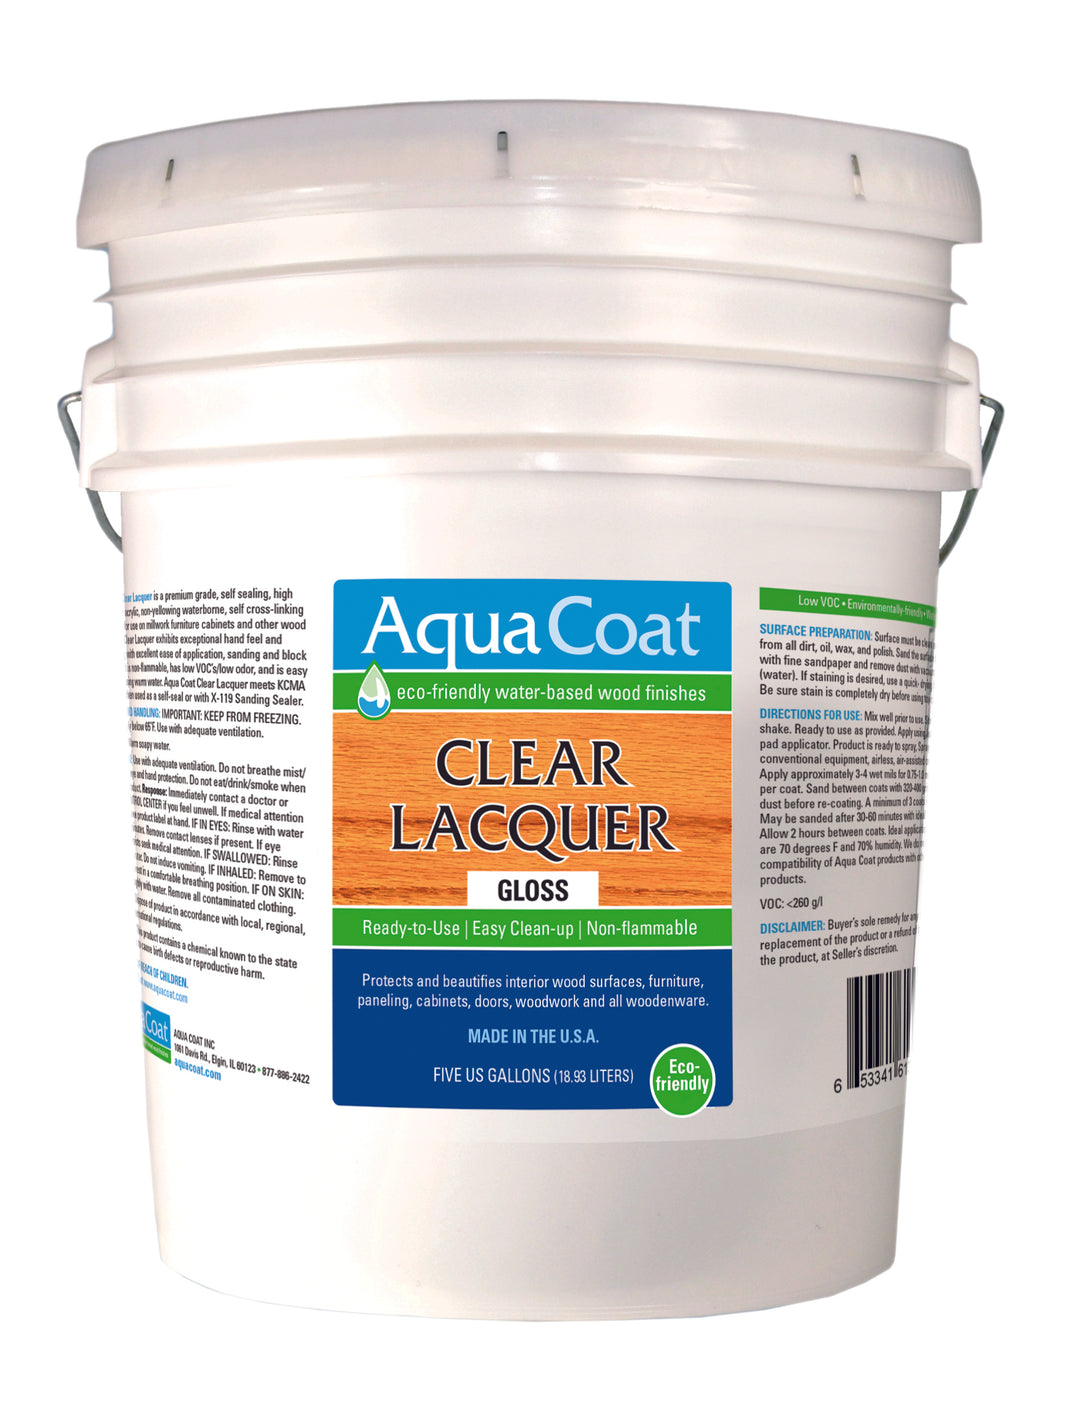 Aqua Coat Clear Lacquer